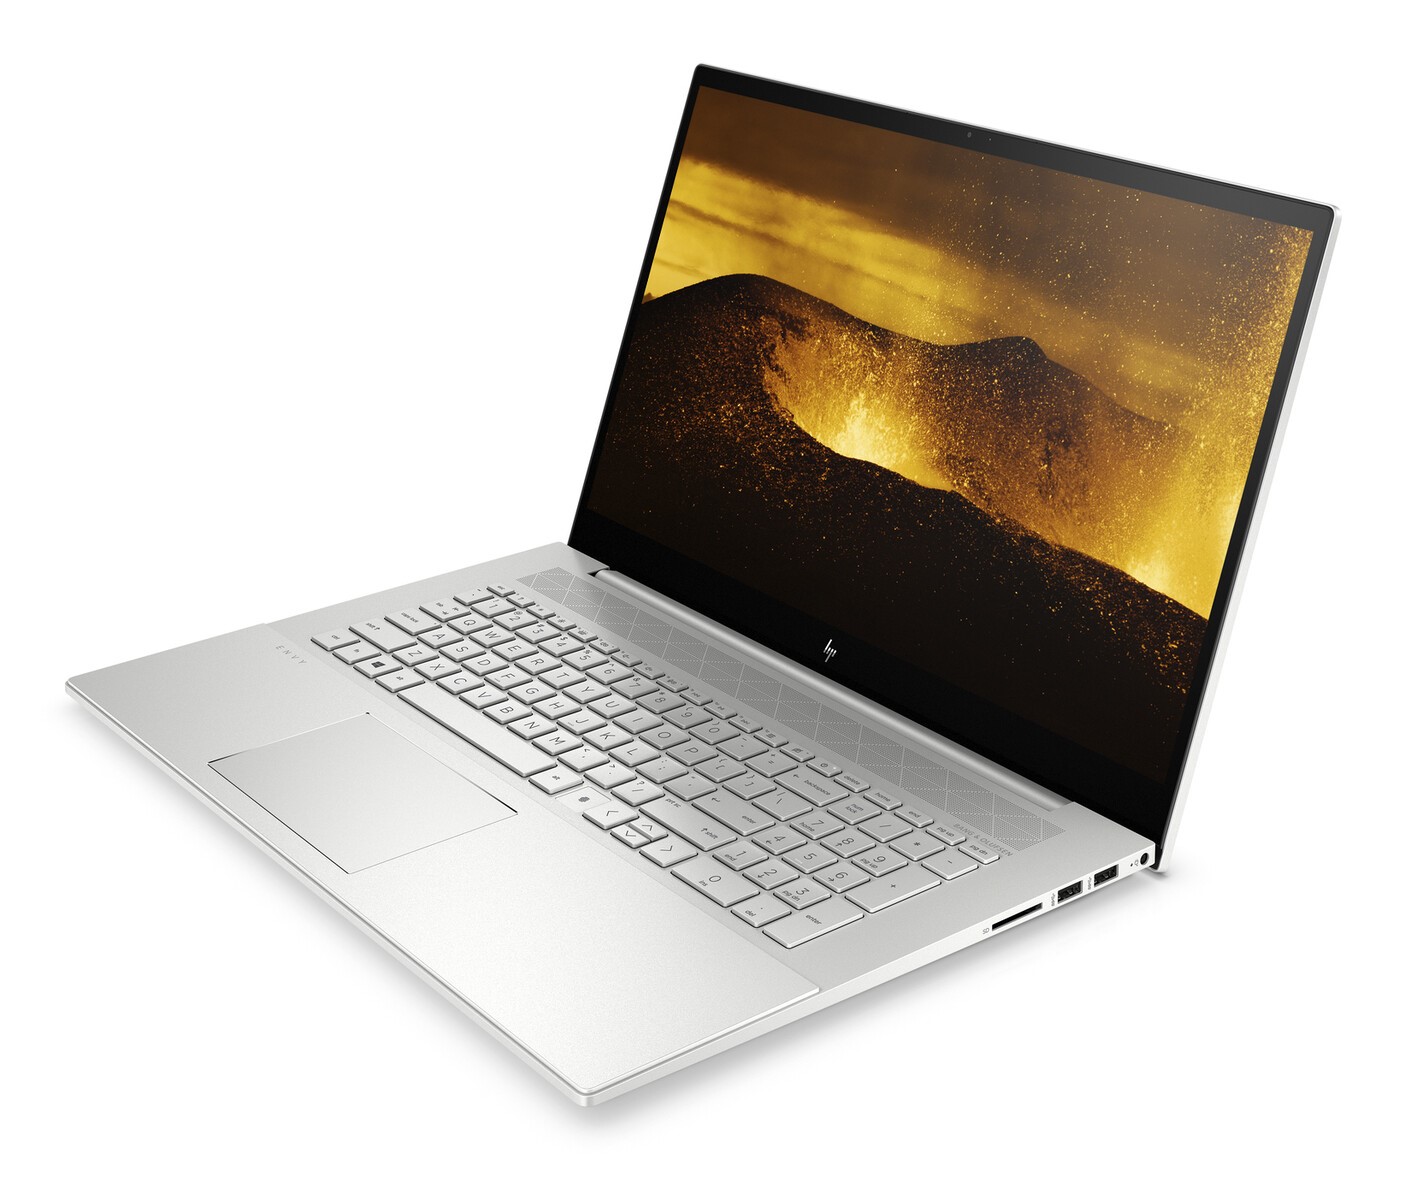 HP pustio u prodaju laptop Envy 17 s procesorom Core i7-1065G7 (Ice Lake) -  Laptopi @ Bug.hr